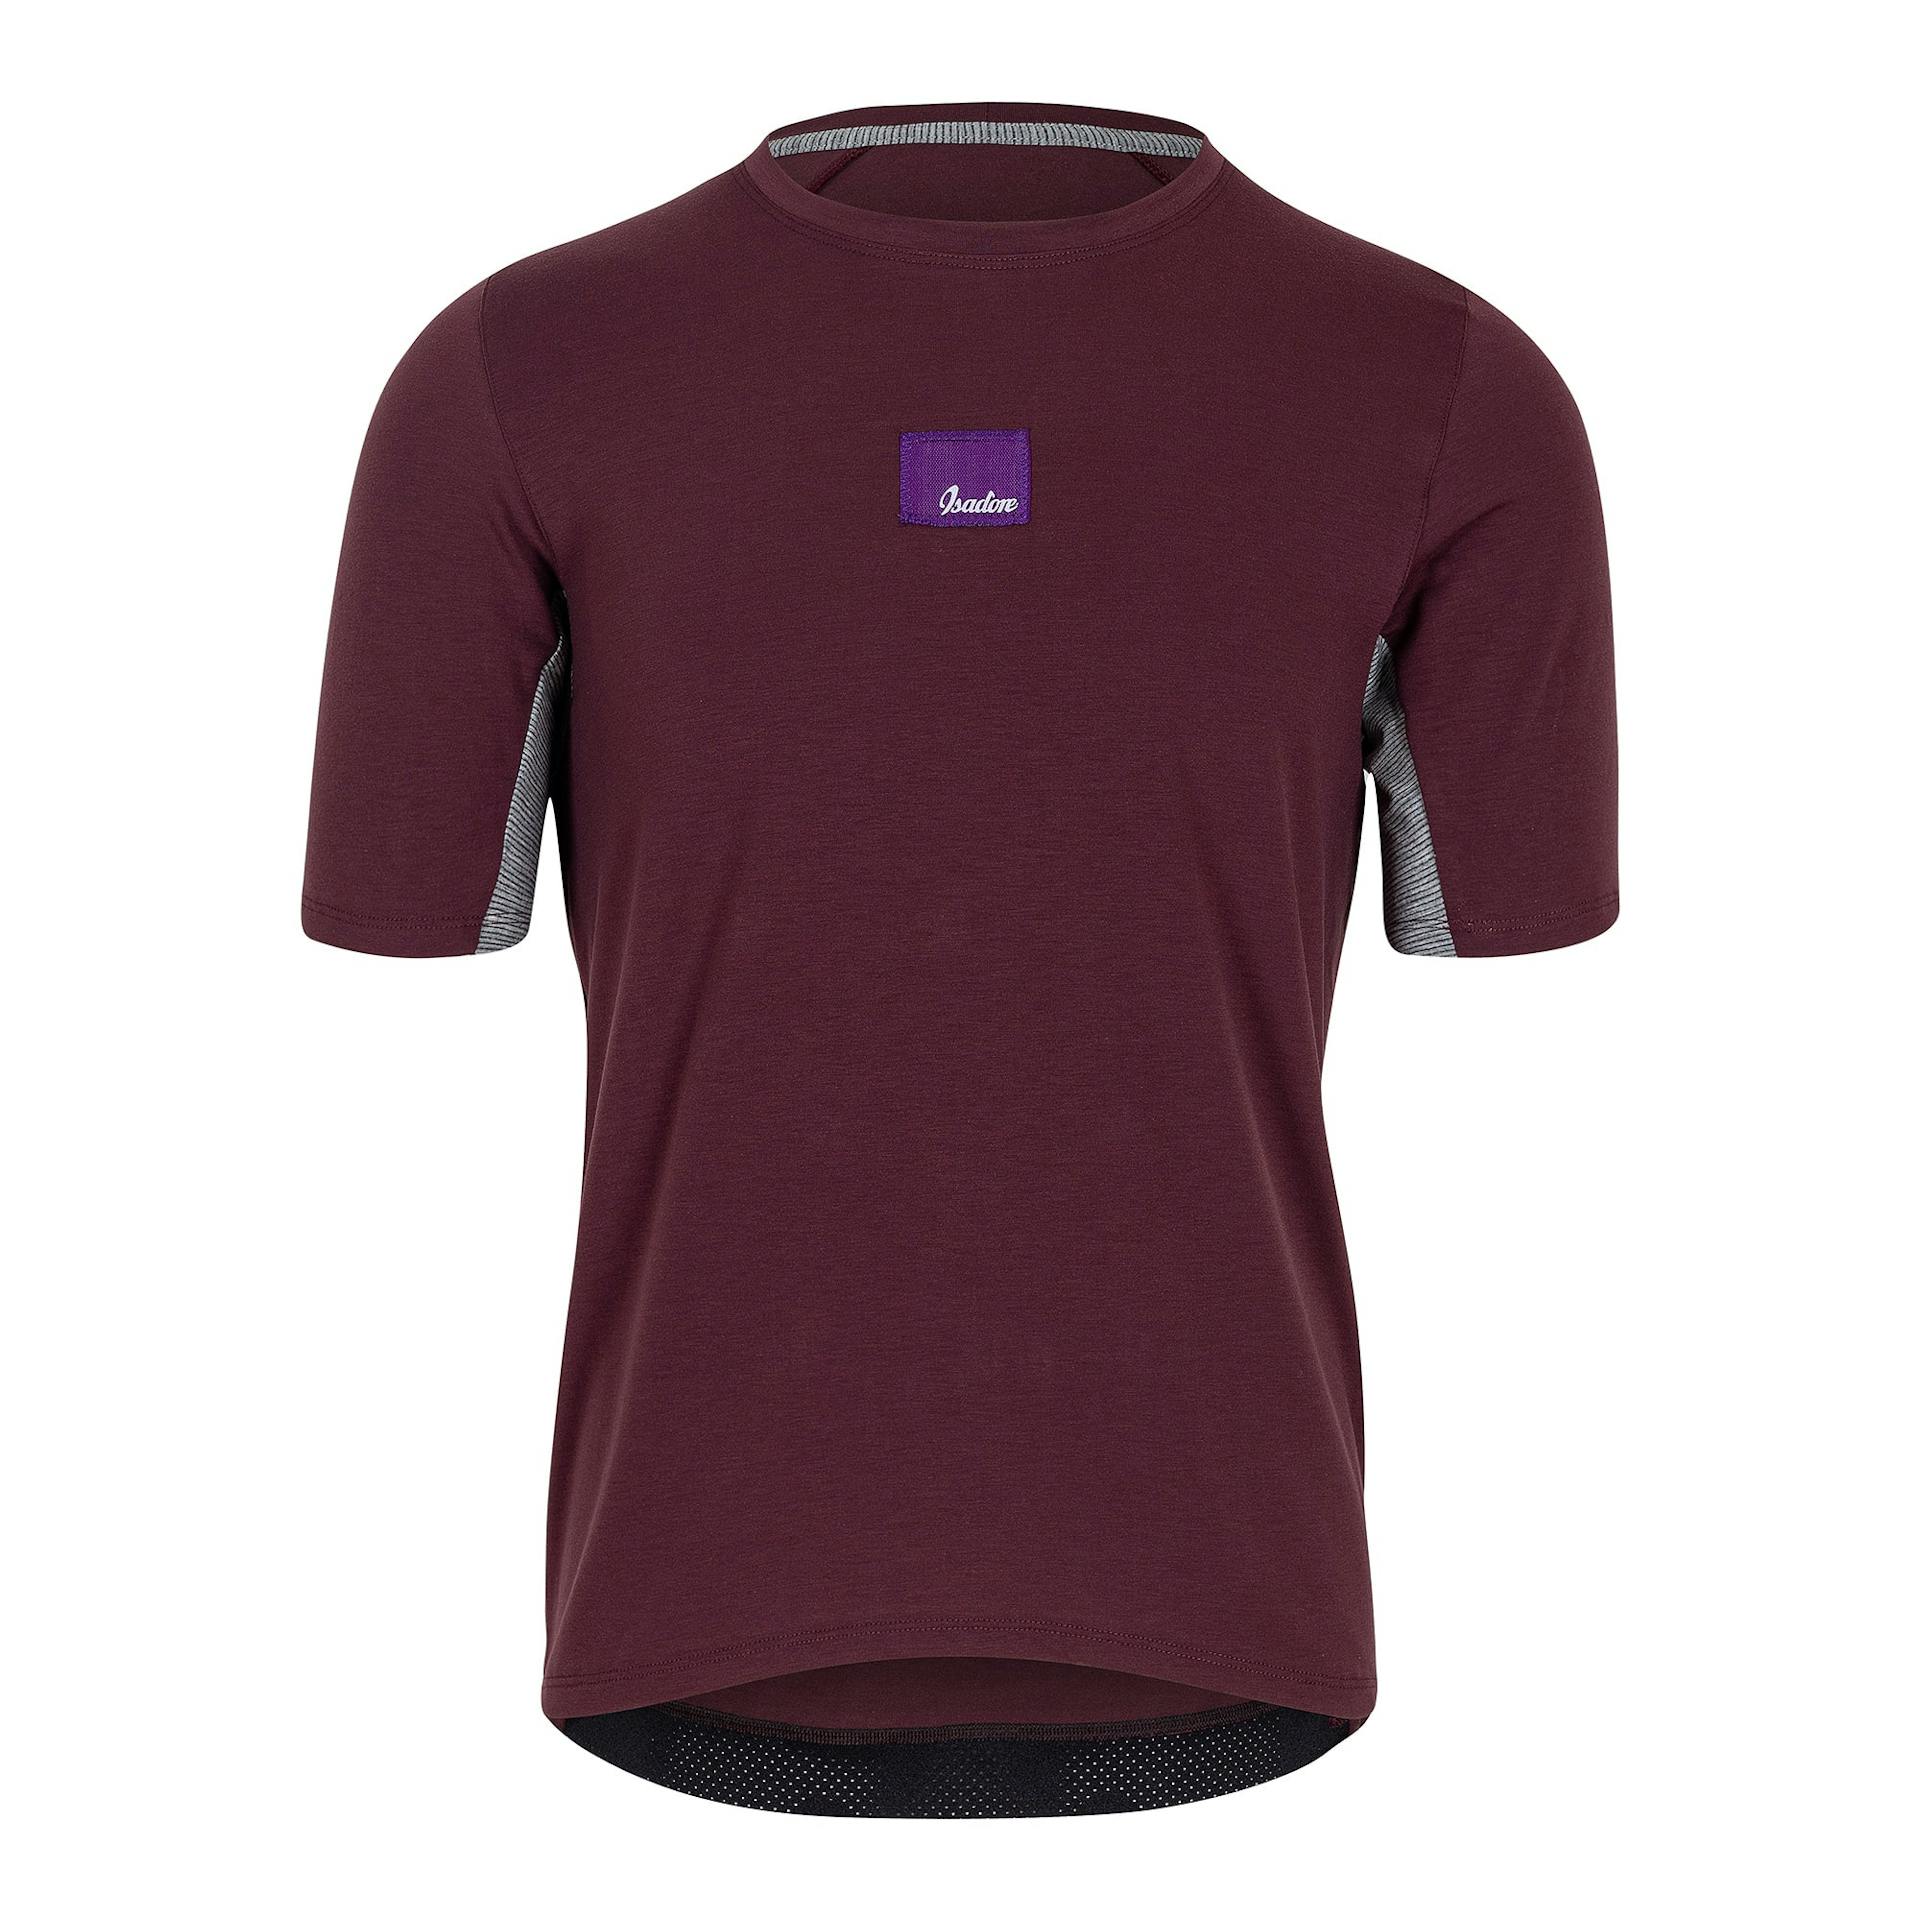 Off-road Tech T-Shirt - Burgundy
                        